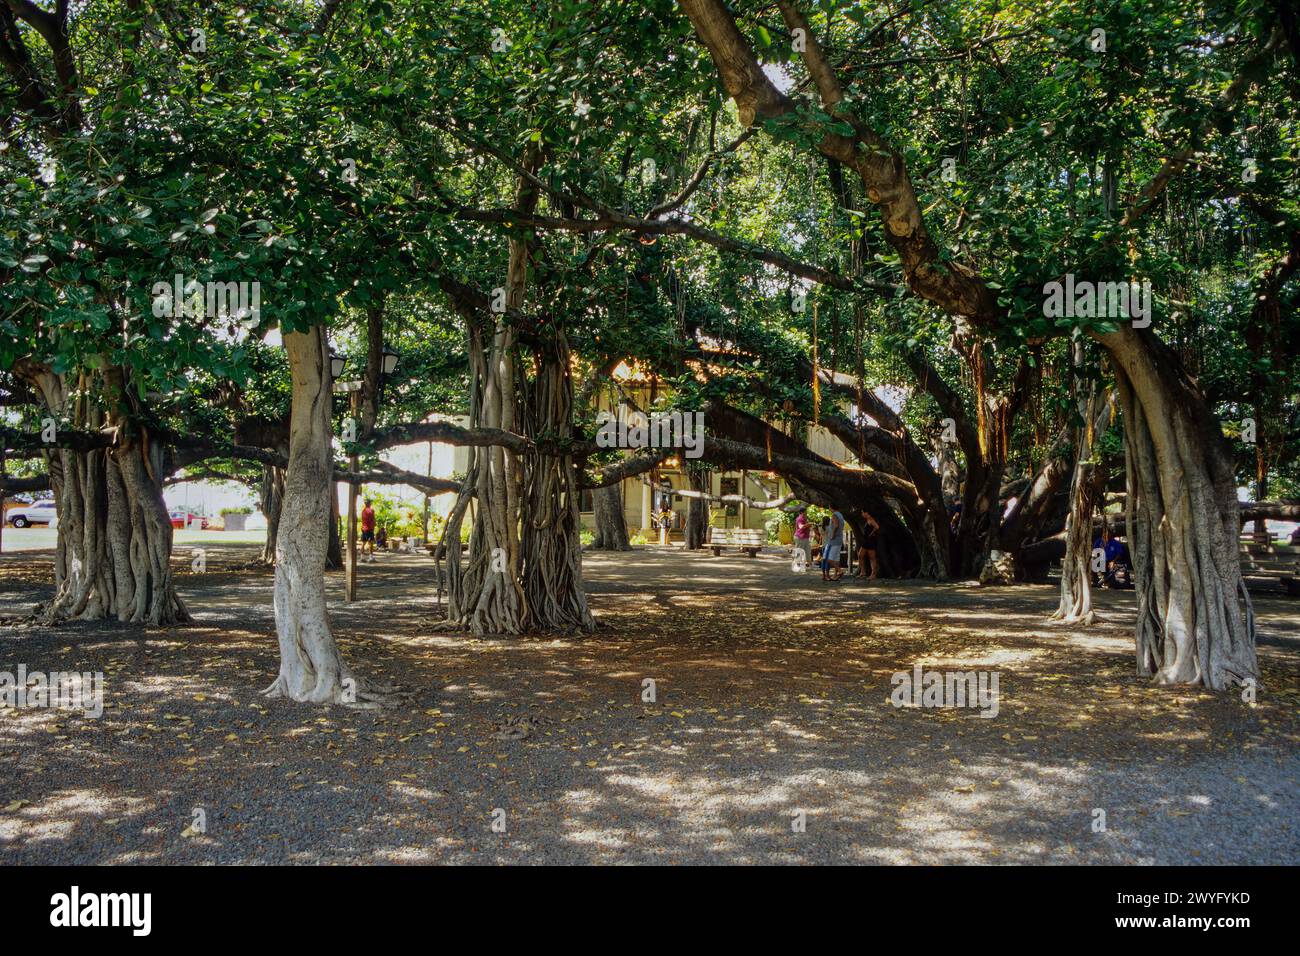 Maui, Hawaii, U.S.A. - Lahaina Banyan Tree Park Before the 2023 Fire. Stock Photo